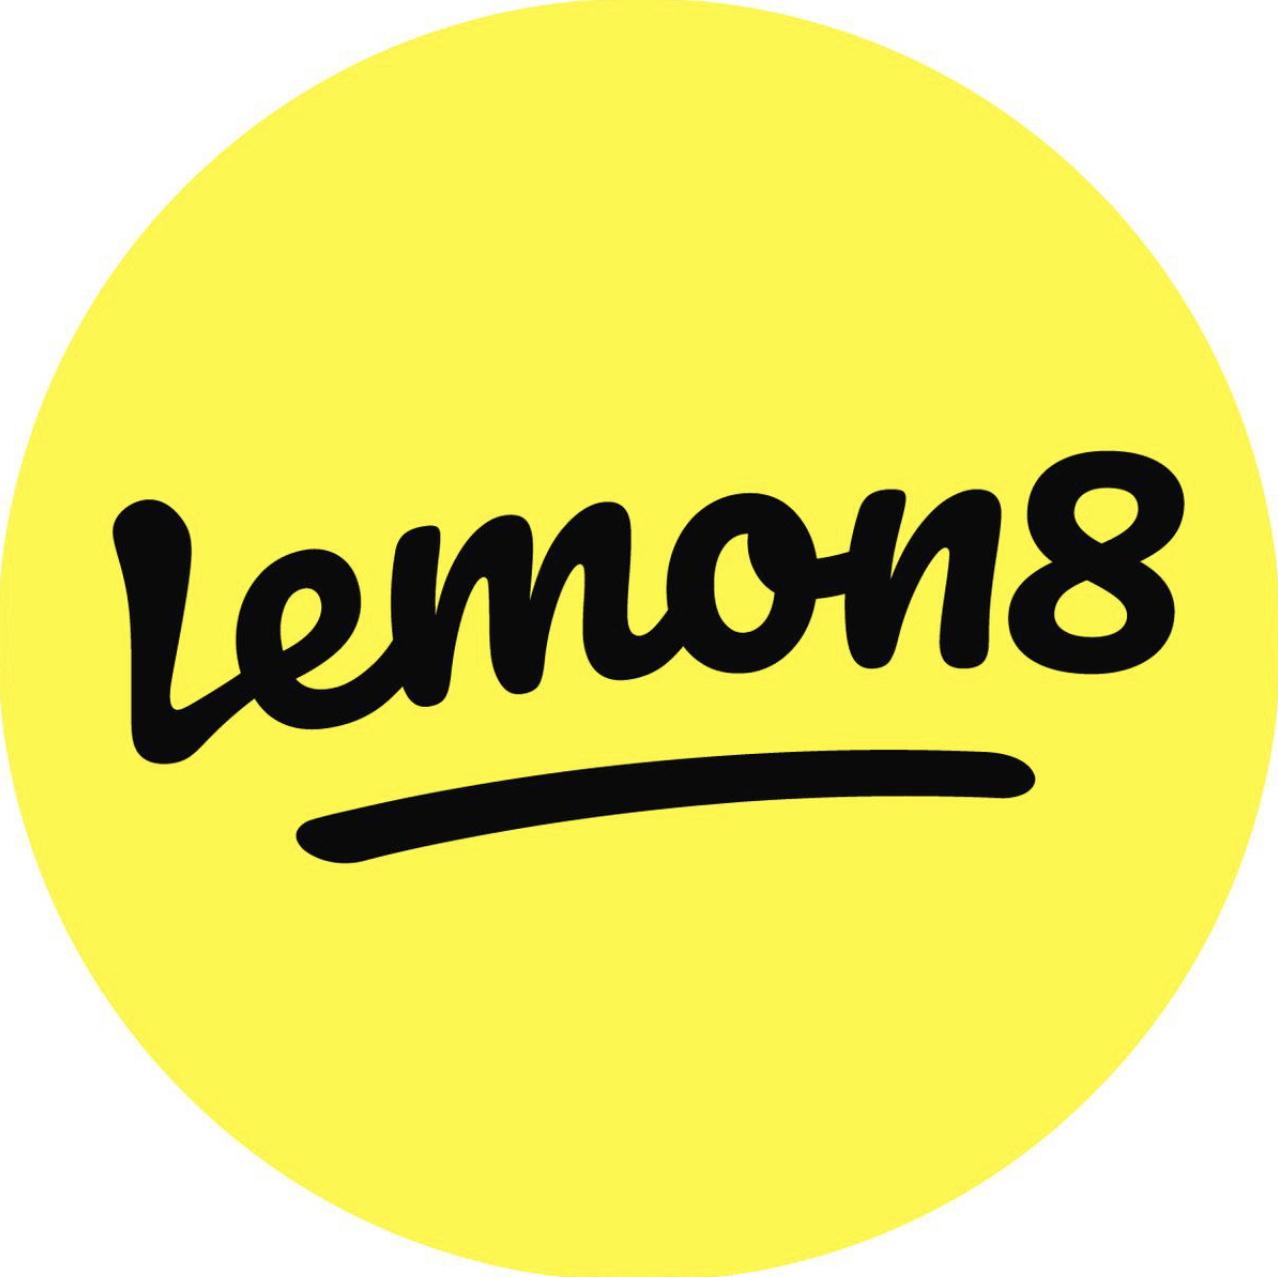 Lemon8_MY's images